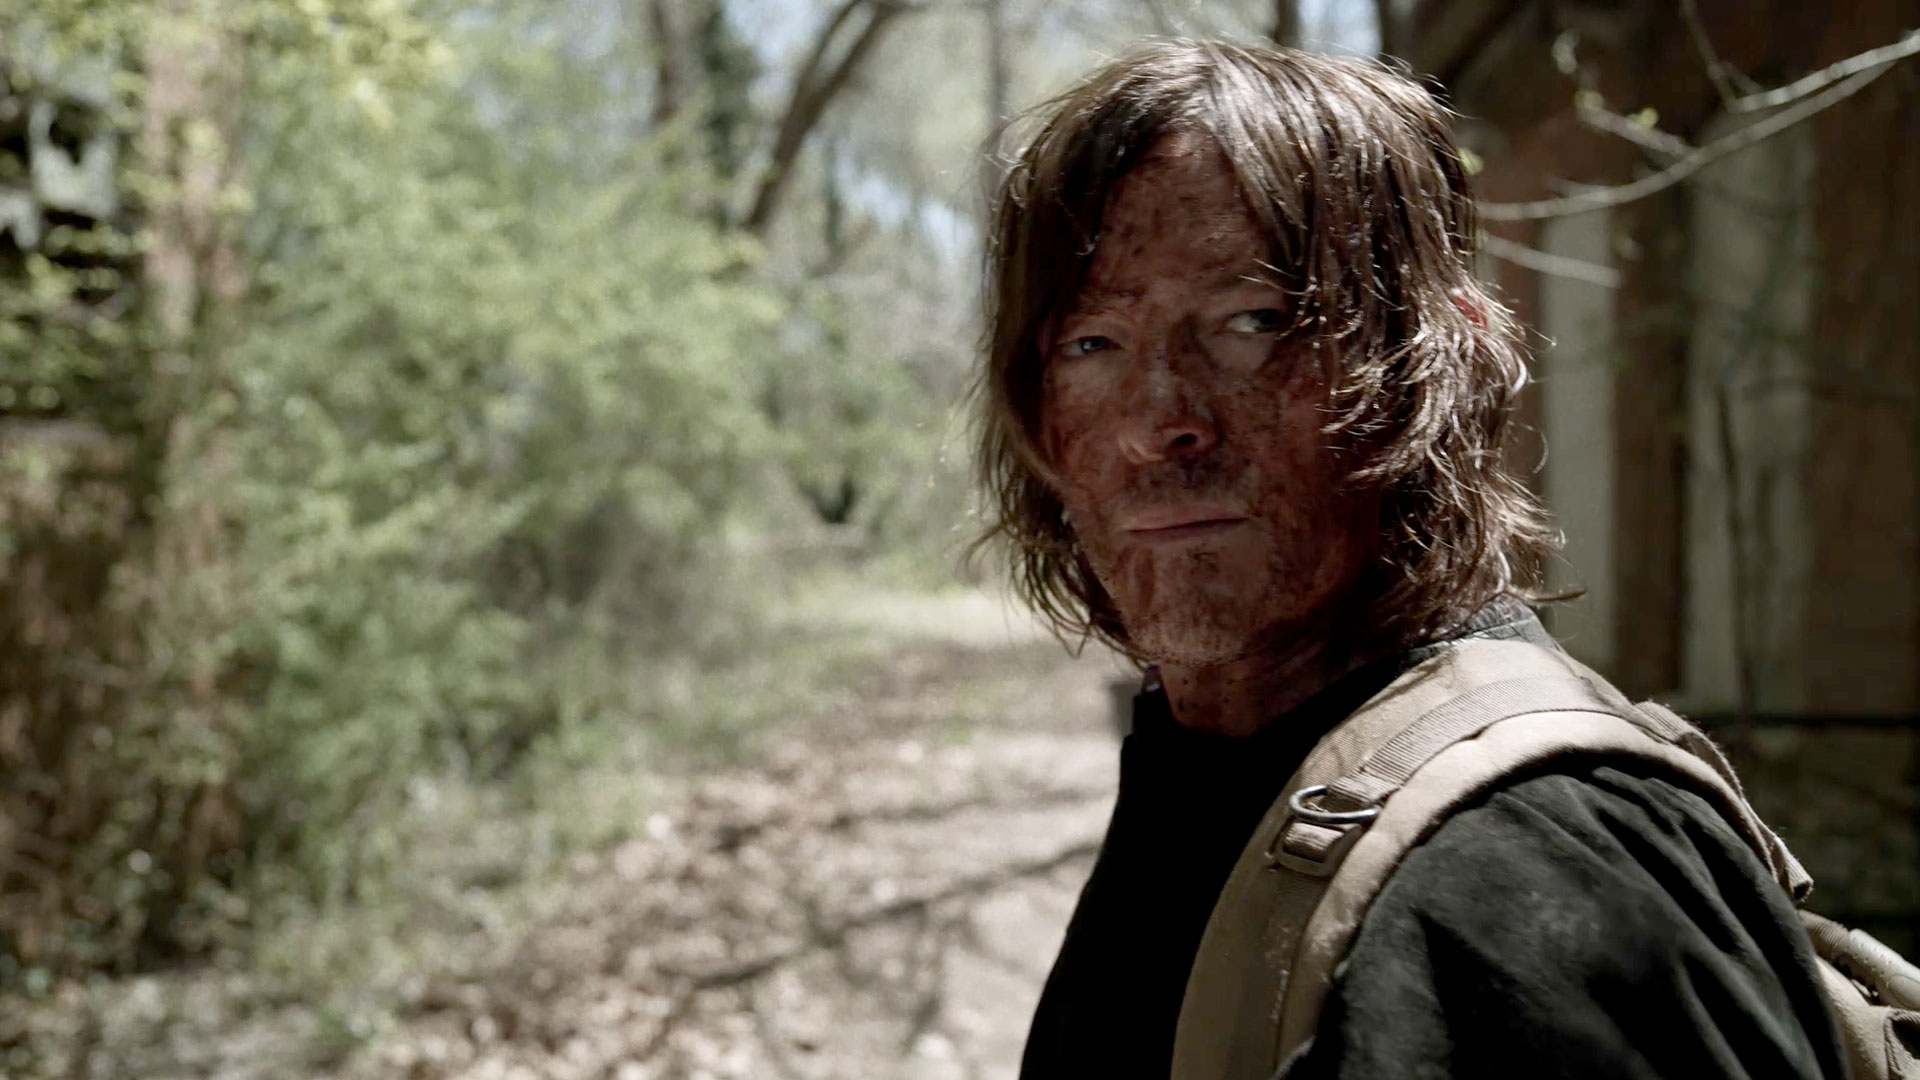 تیزر جدید و تاریخ انتشار بخش دوم فصل یازدهم سریال تاریخ انتشار بخش دوم فصل یازدهم سریال مردگان متحرک (The Walking Dead) اعلام شد.